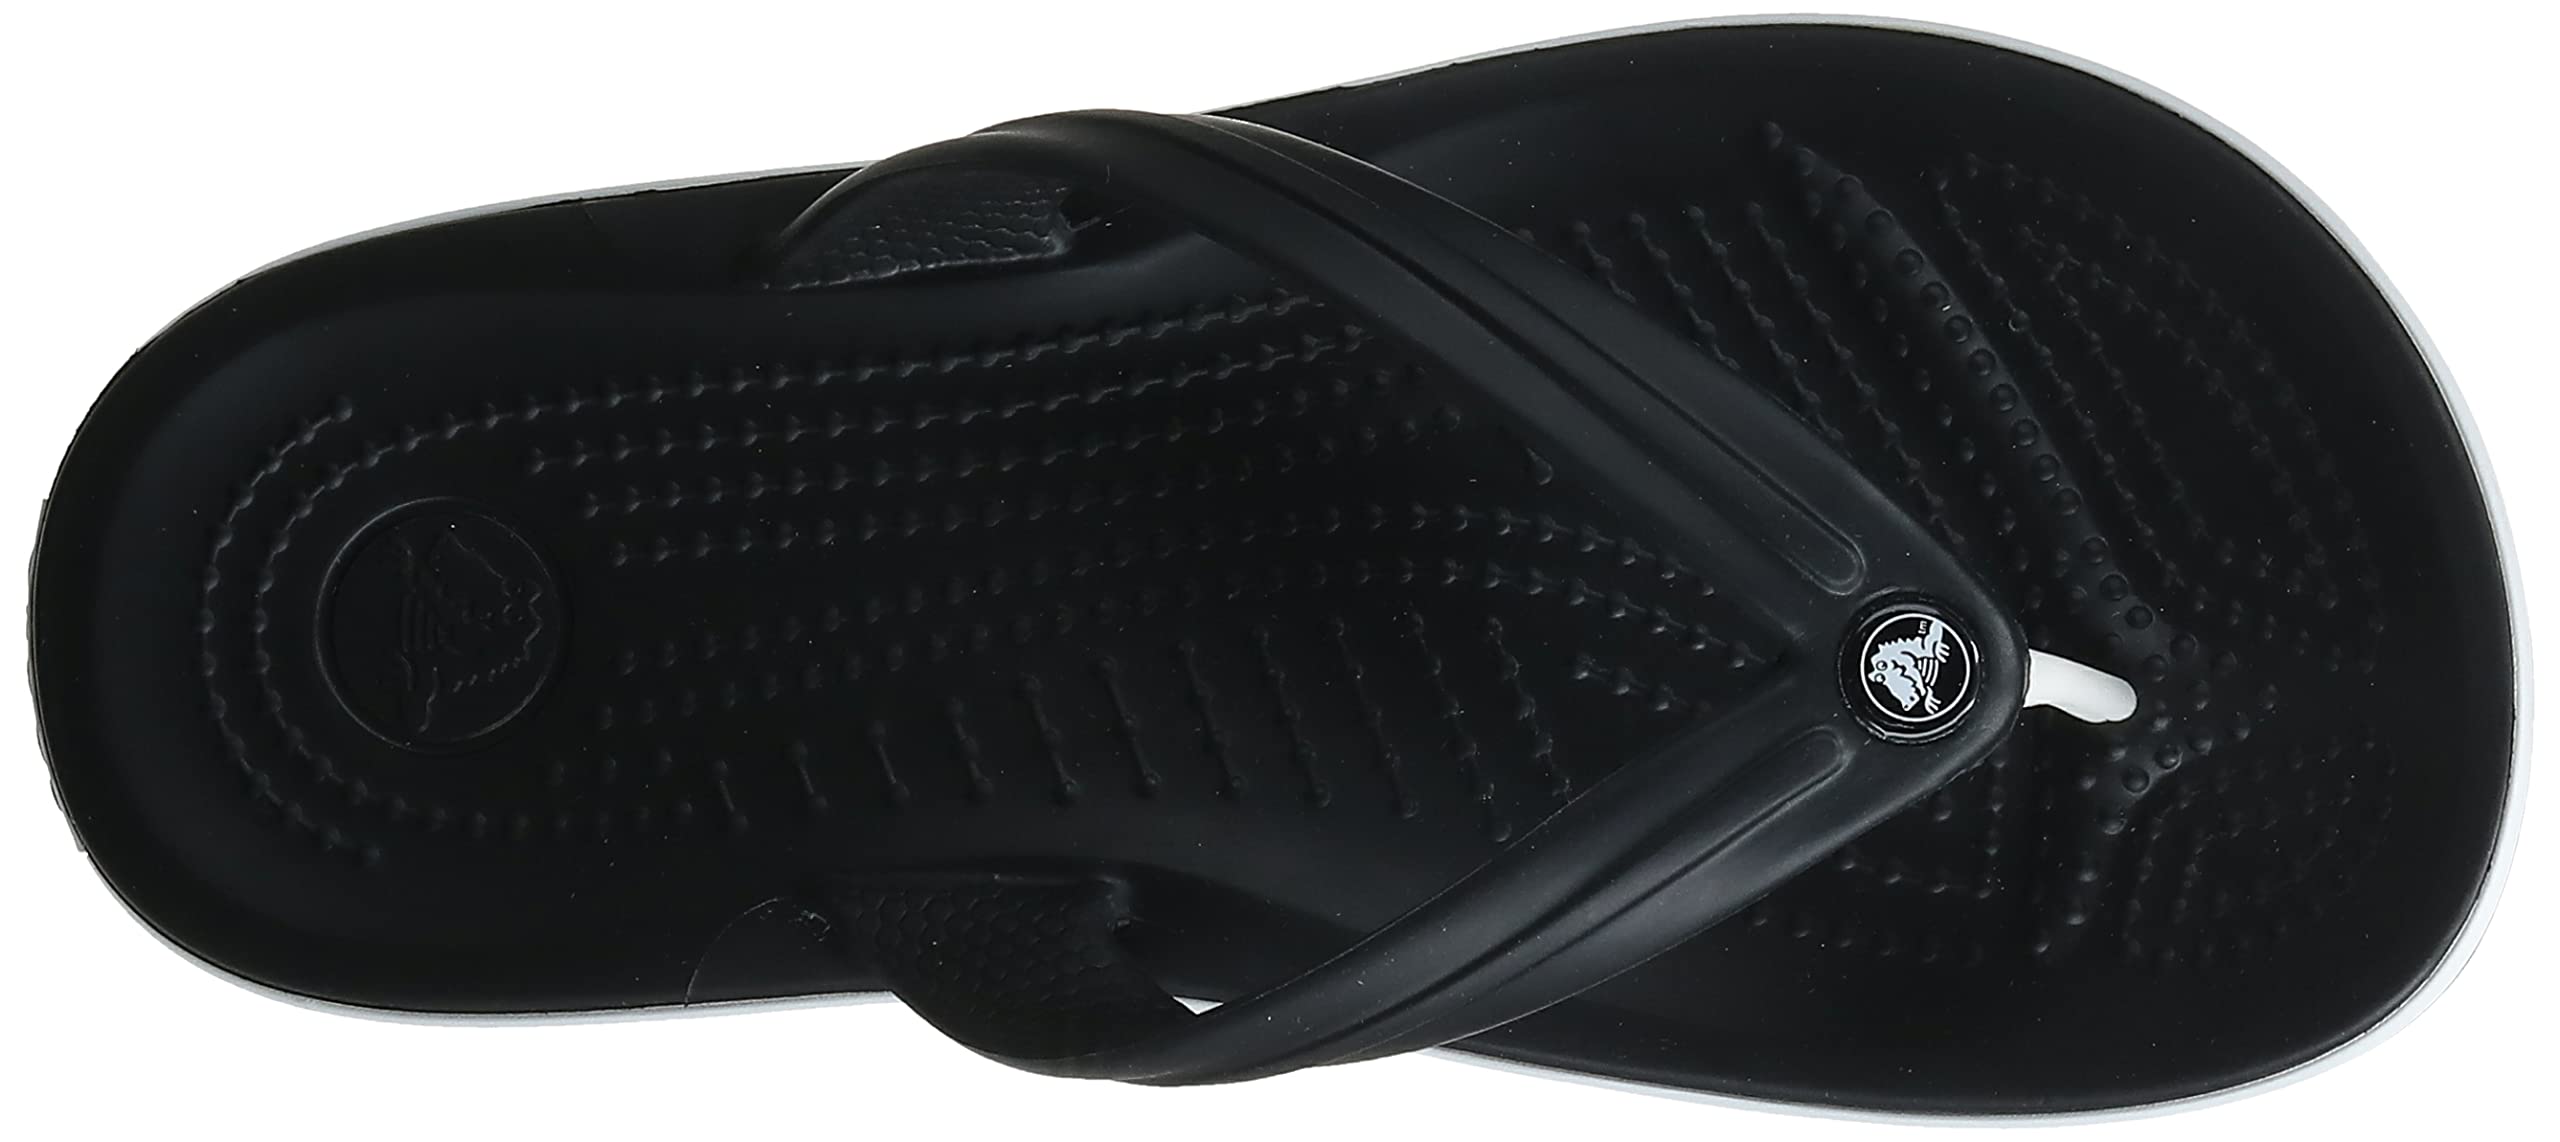 Crocs Unisex Crocband Flip Flops, Black, 6 Men/8 Women